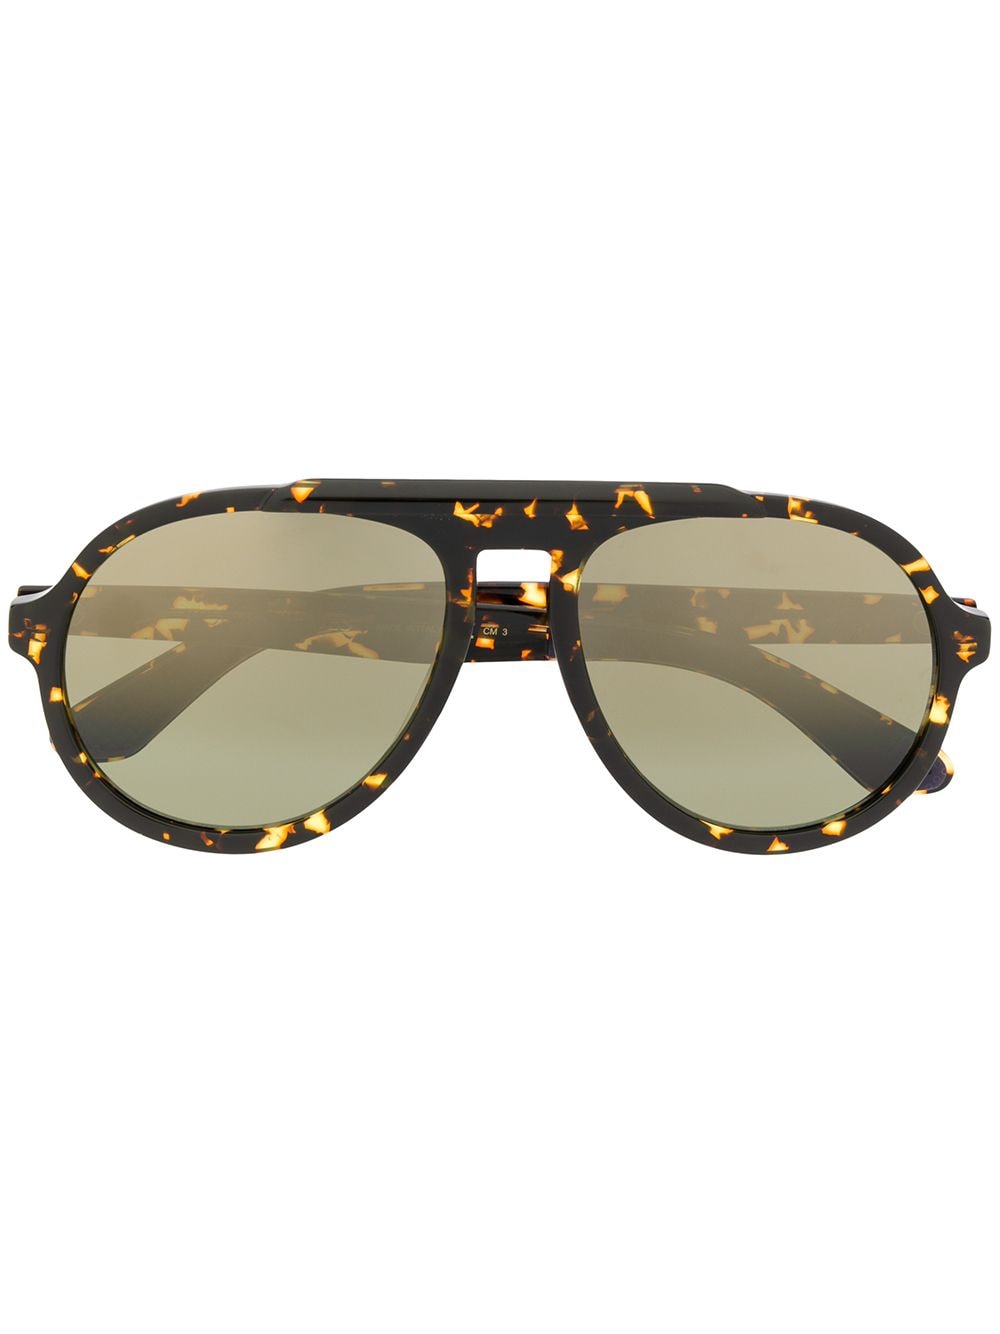 фото Jimmy choo eyewear солнцезащитные очки-авиаторы в оправе черепаховой расцветки